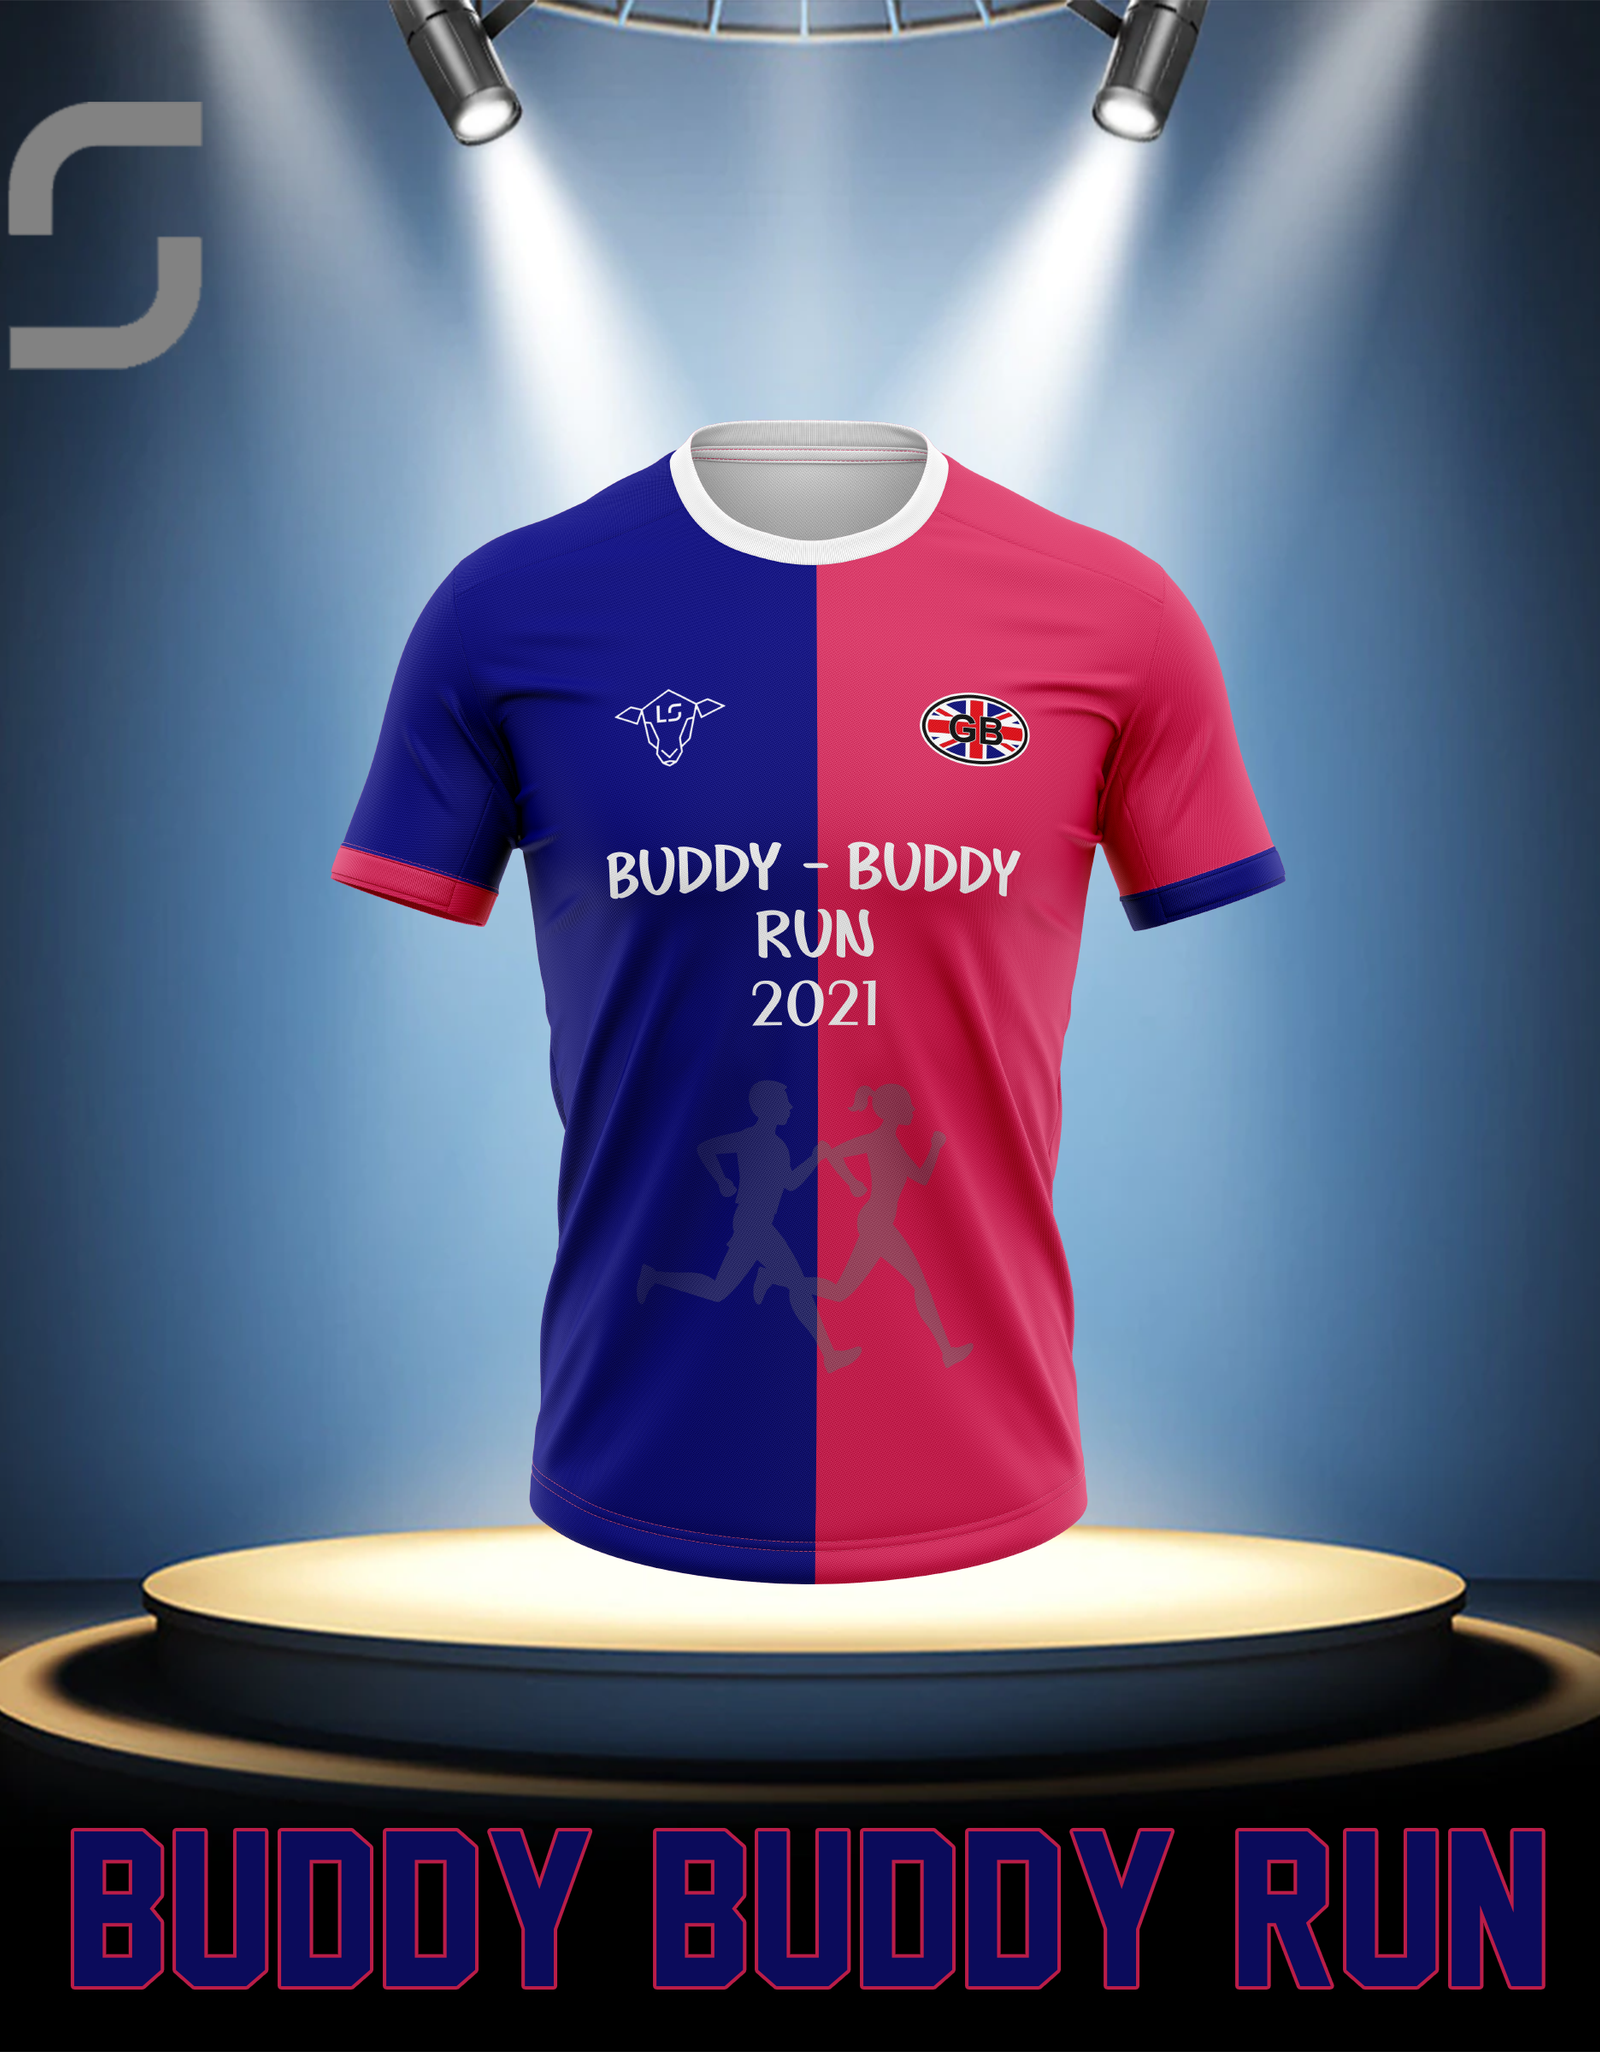 Buddy Buddy Run 2021 Finishers Shirt